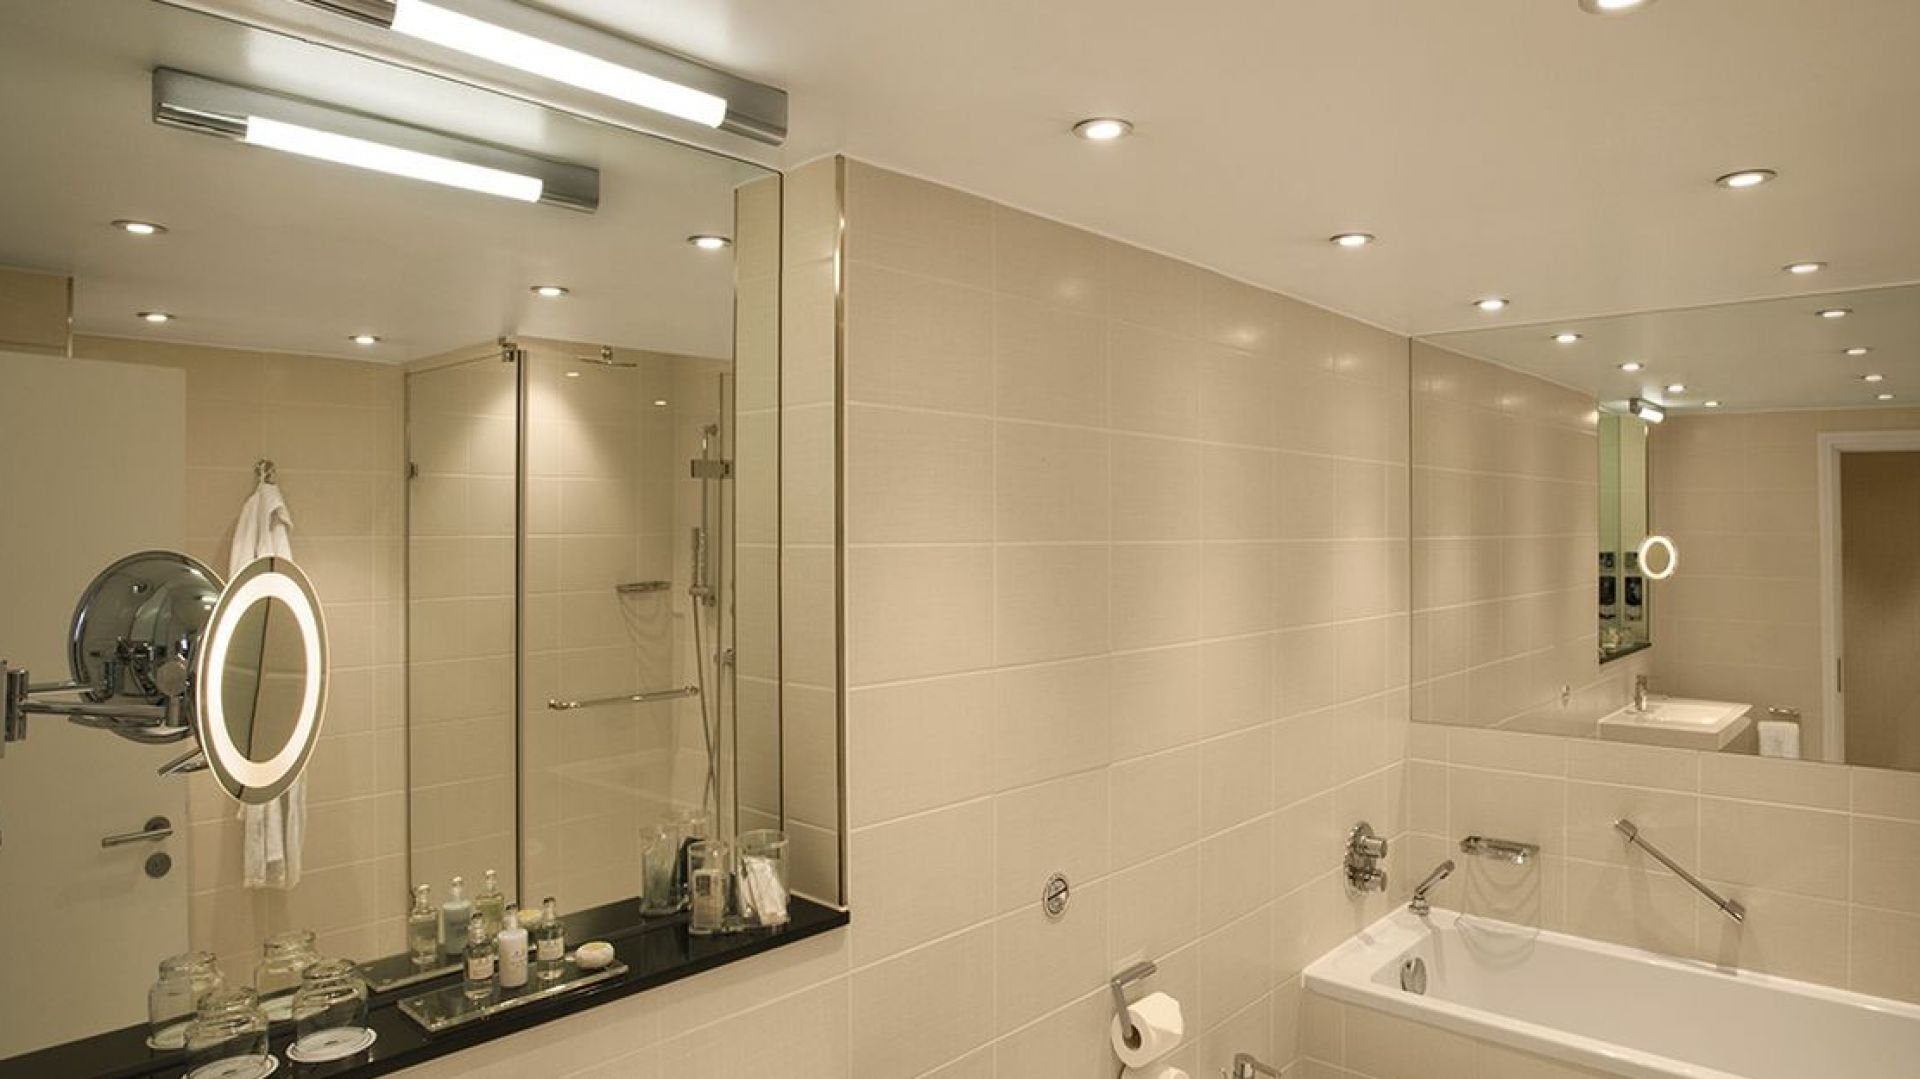 Советы по устройству освещения в ванной комнате, идеи, рекомендации